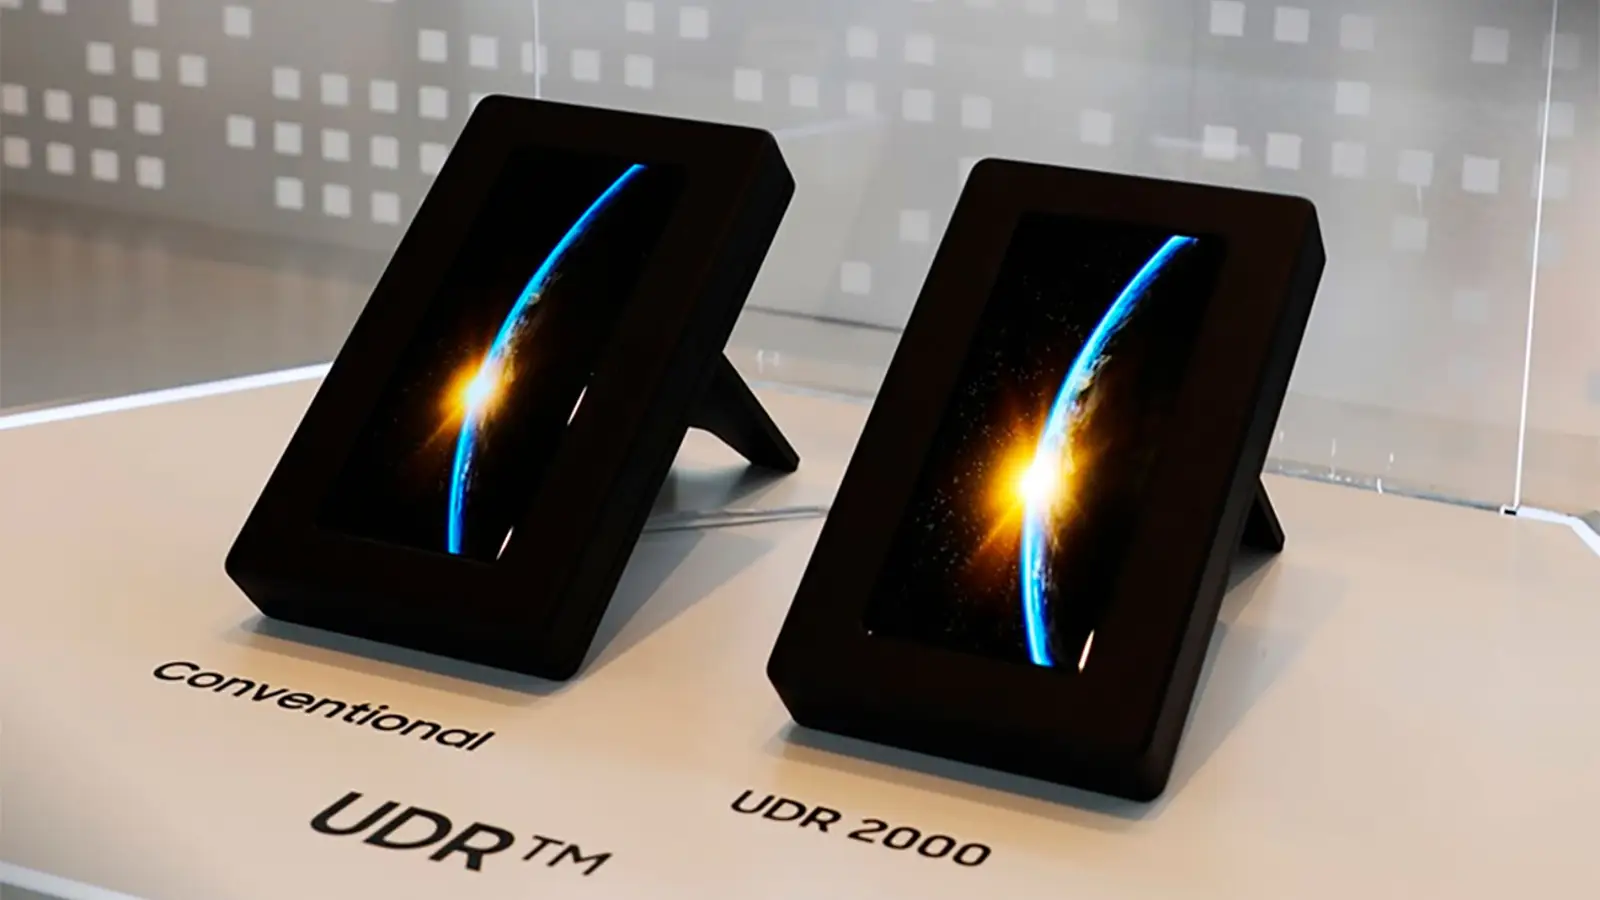 Samsung display udr 2000 oled diferencia